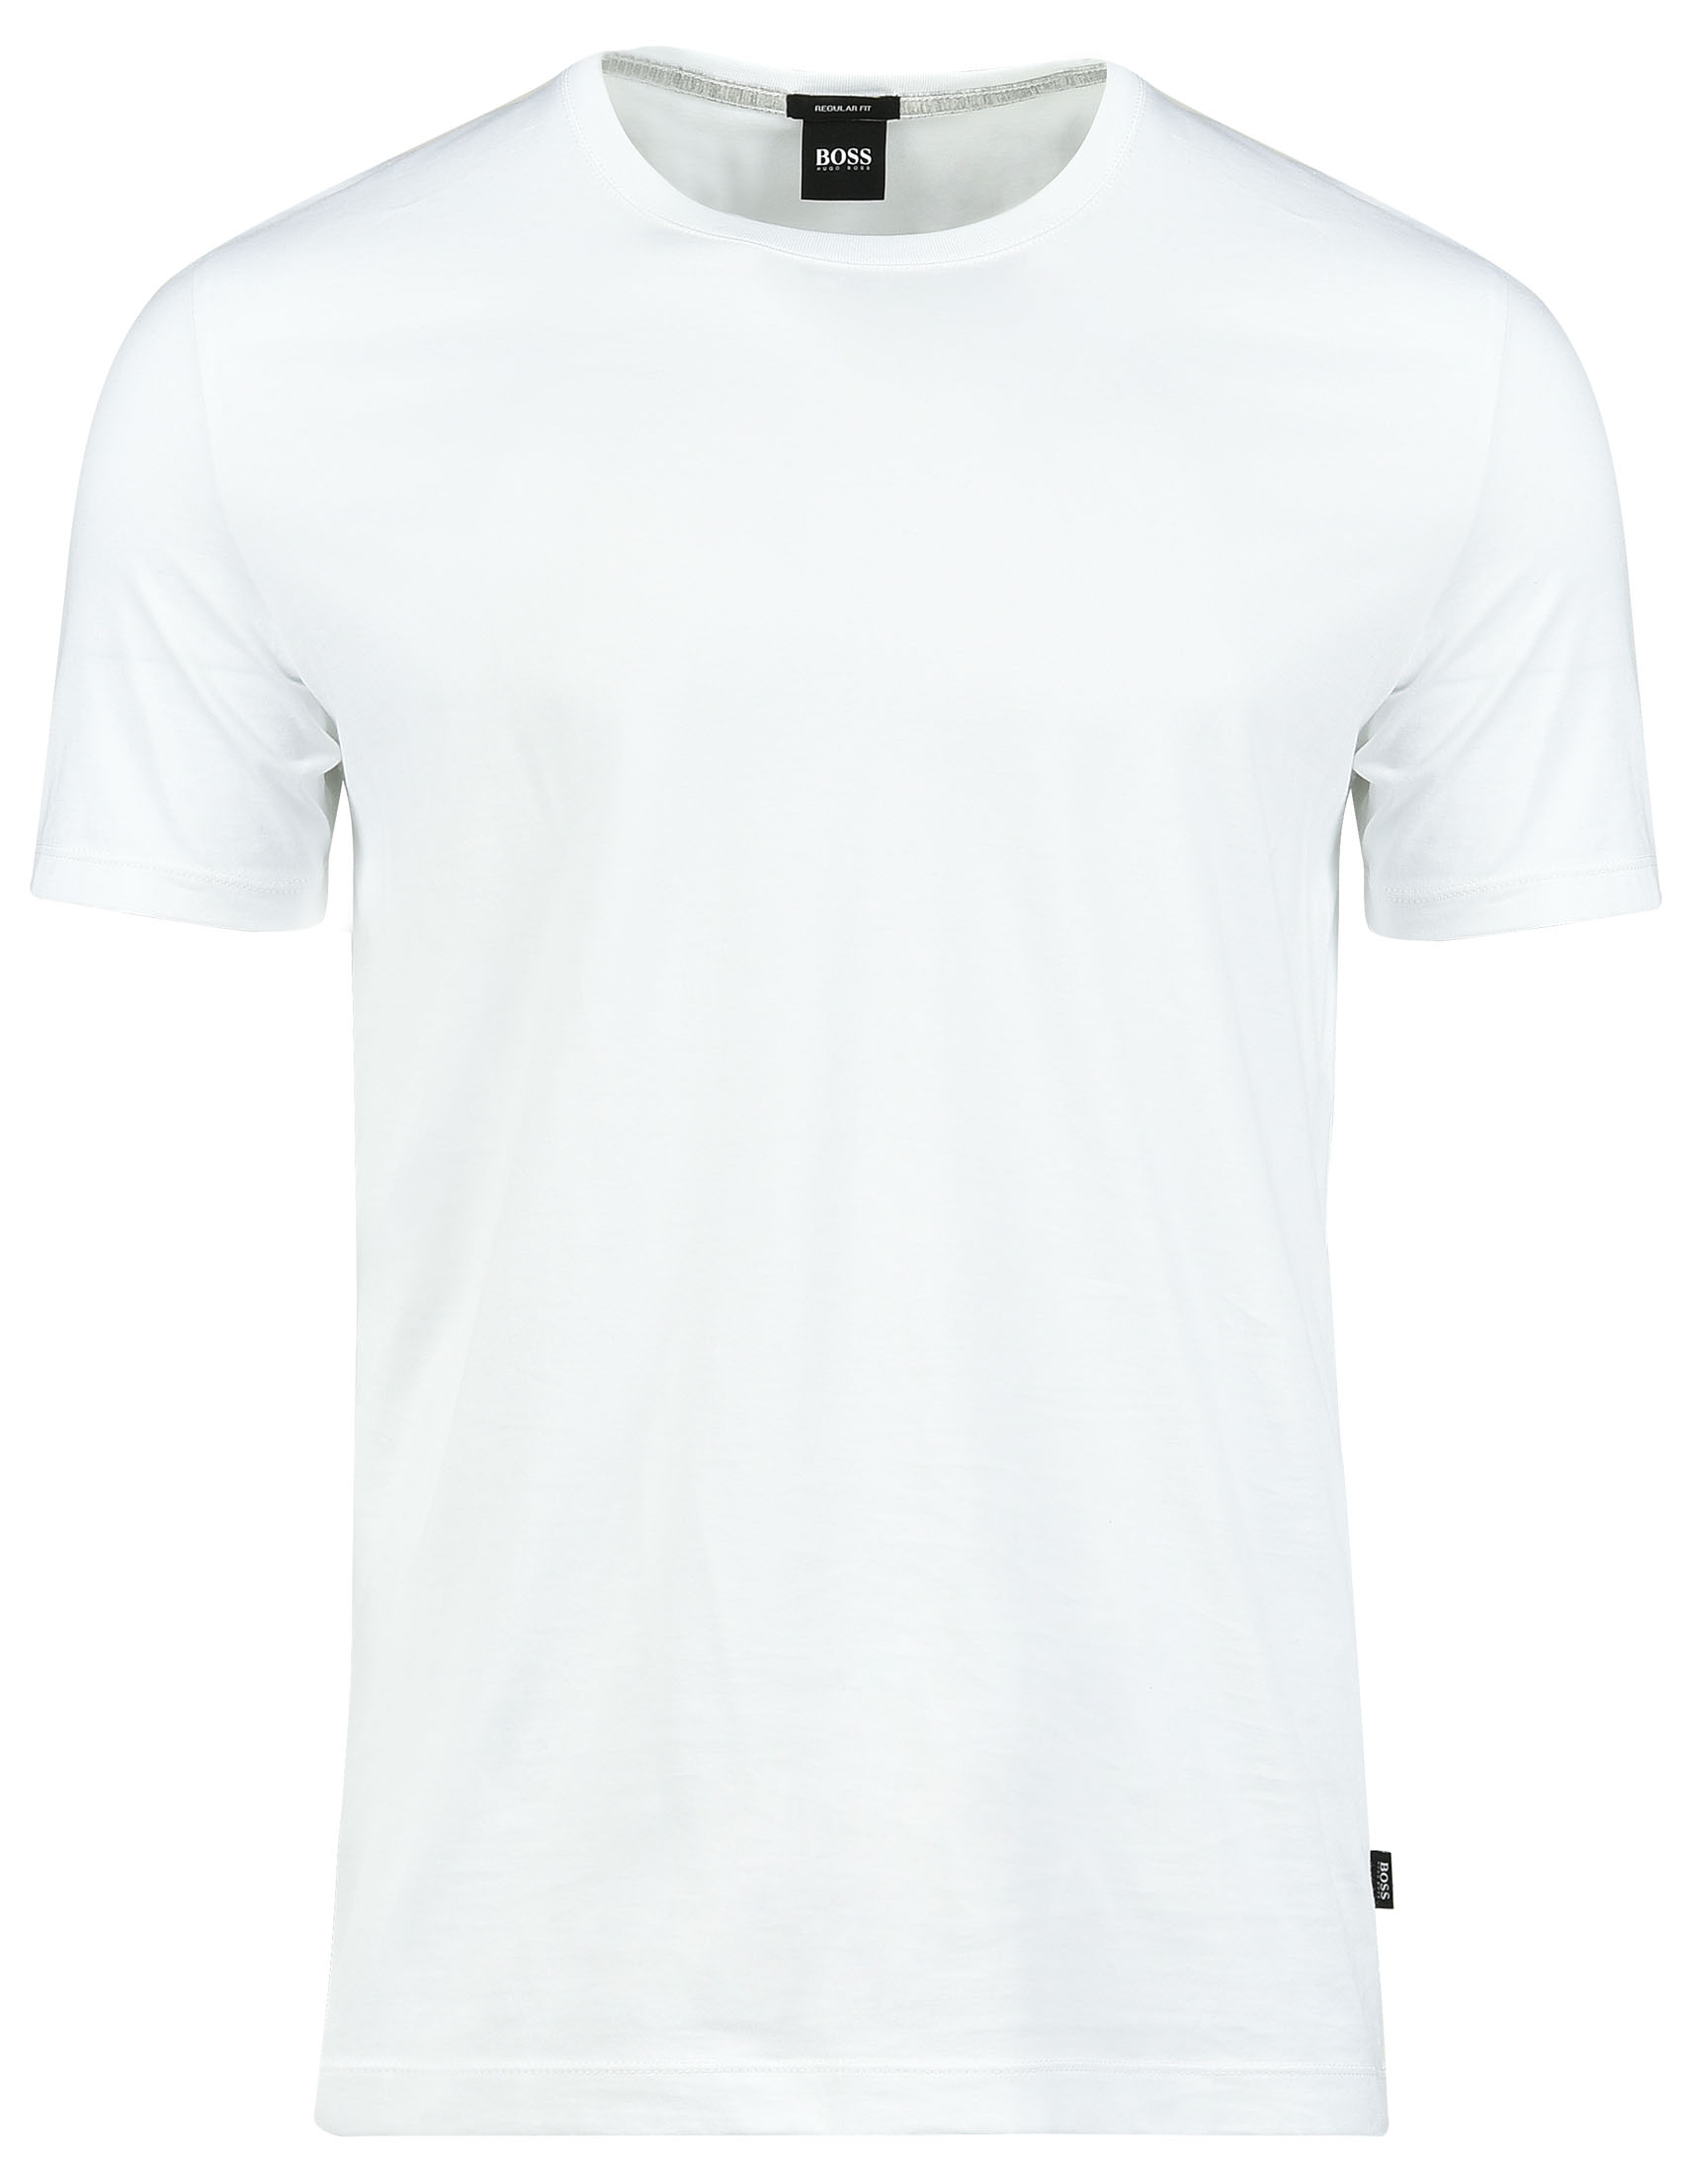 Мужская футболка HUGO BOSS 50379310-100_white